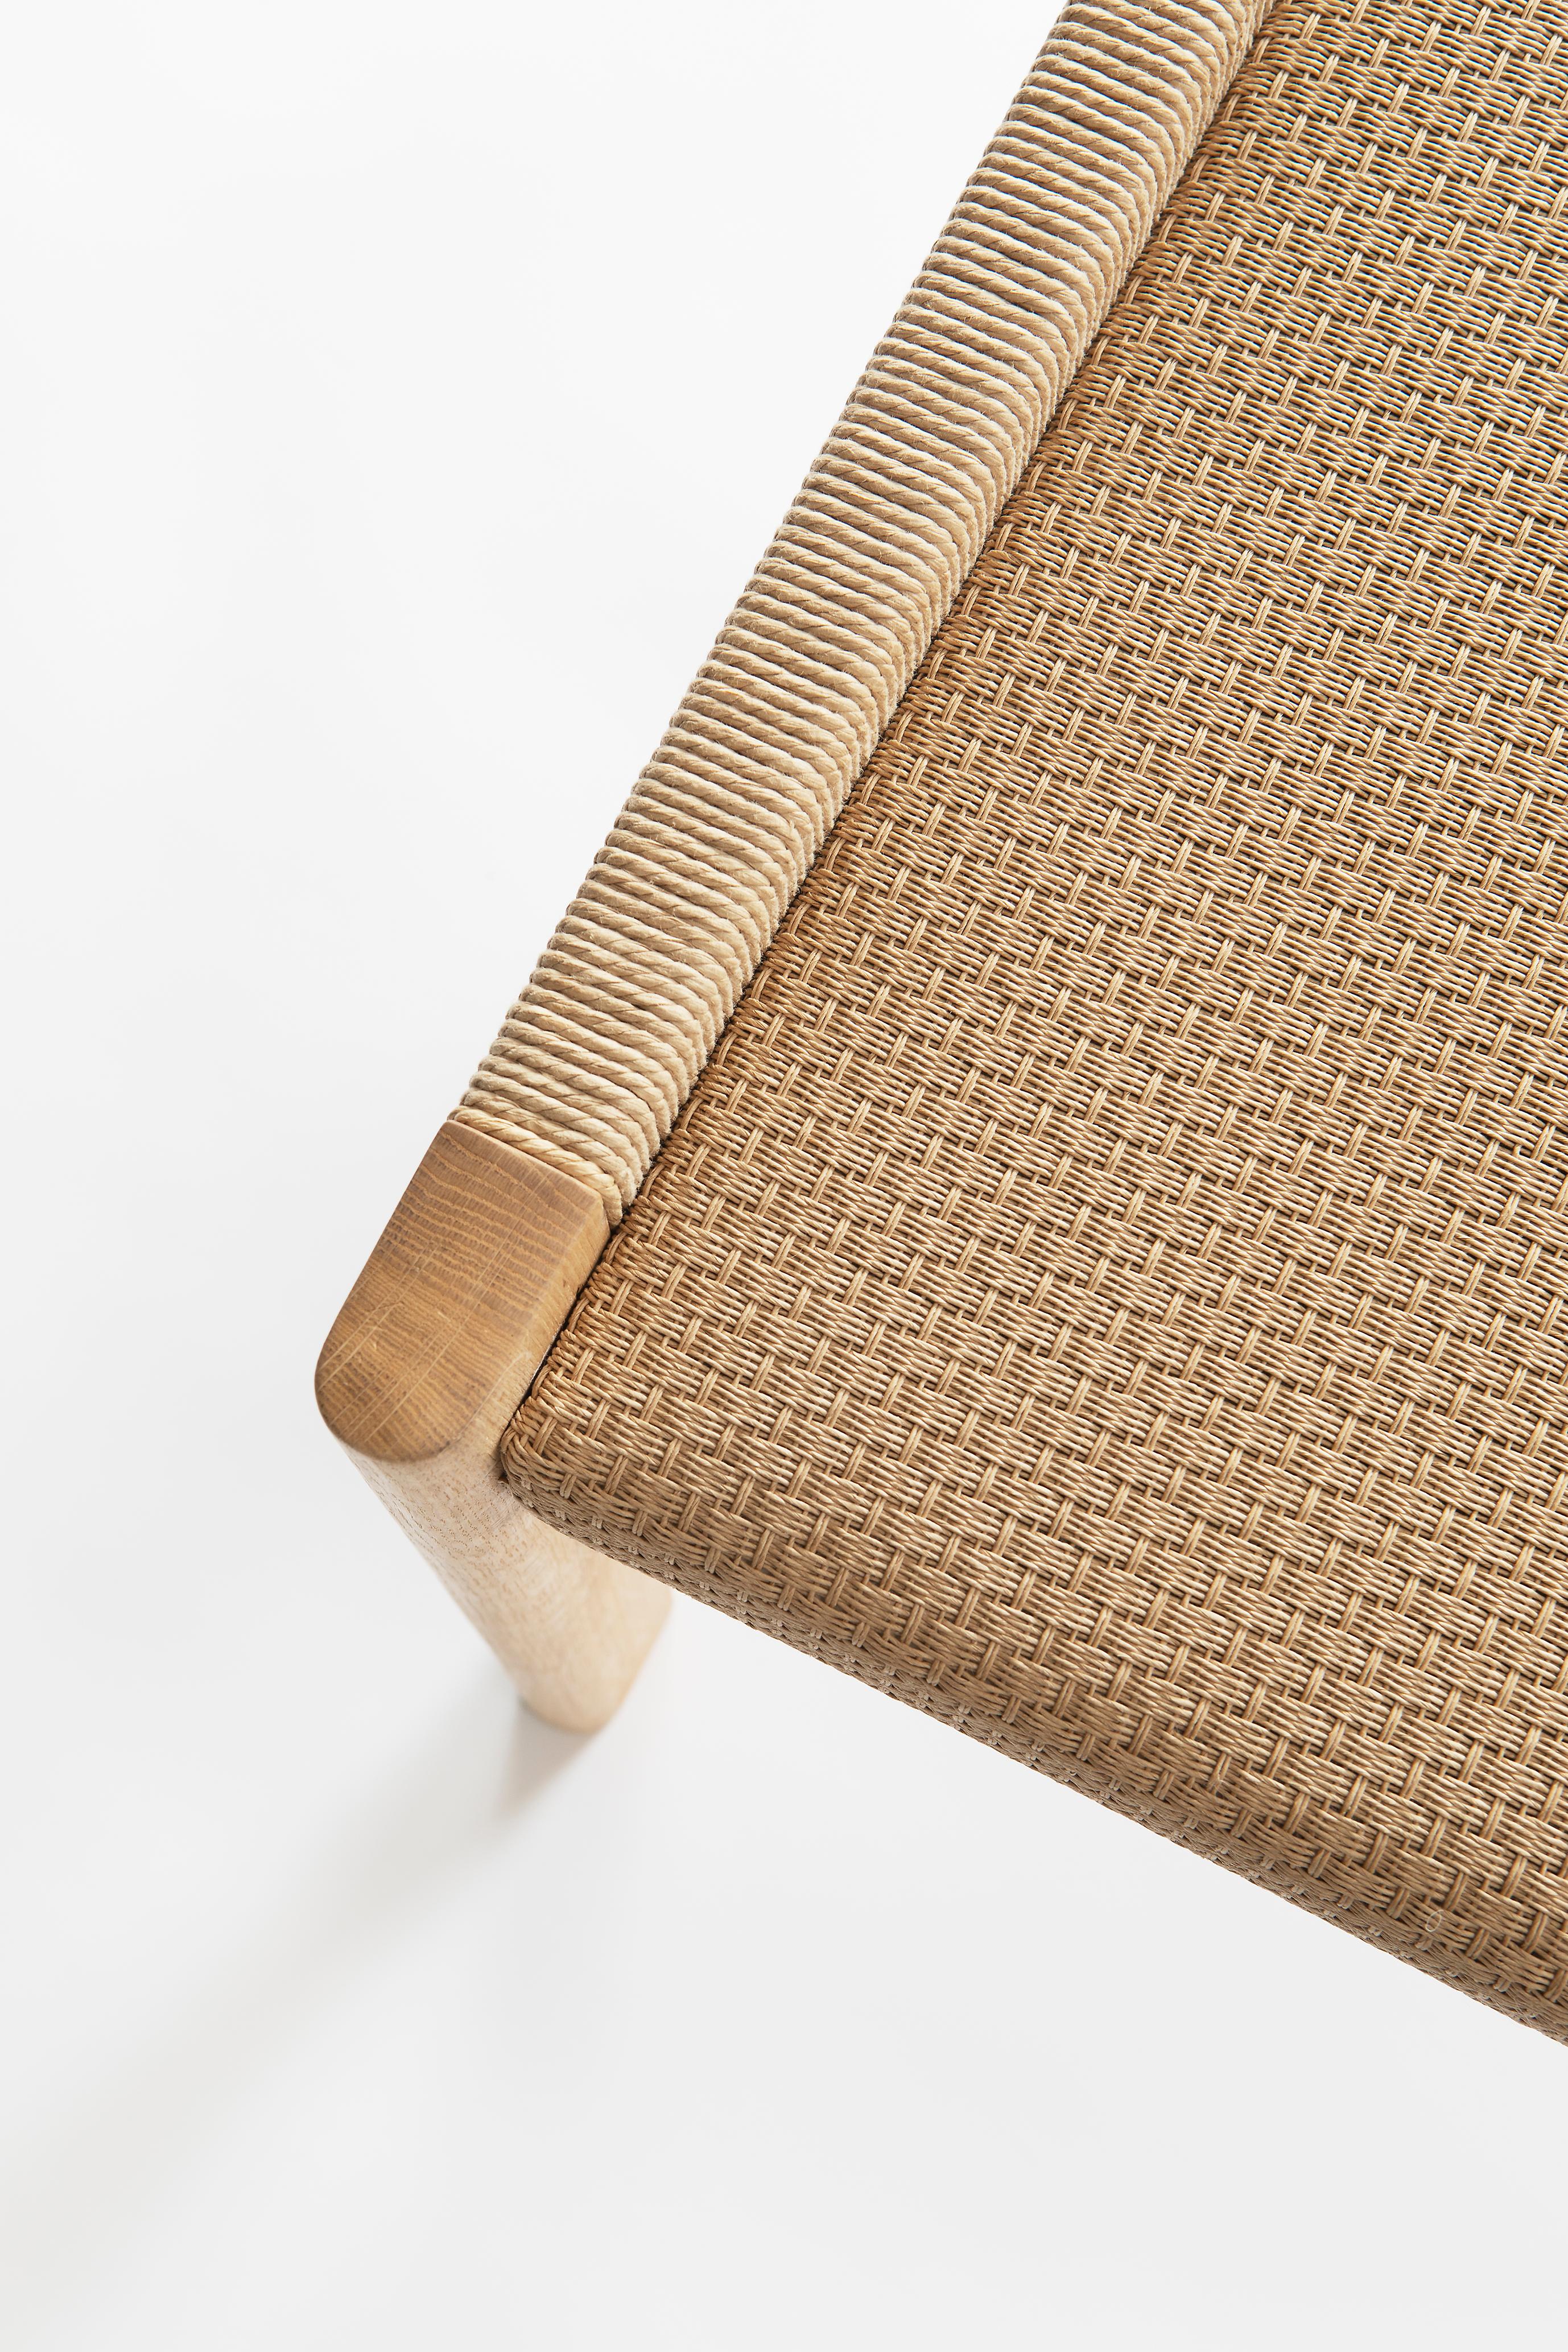 Papercord Detalji Bench in Oak and Paper Yarn by Jenni Roininen & Ritva Puotila For Sale